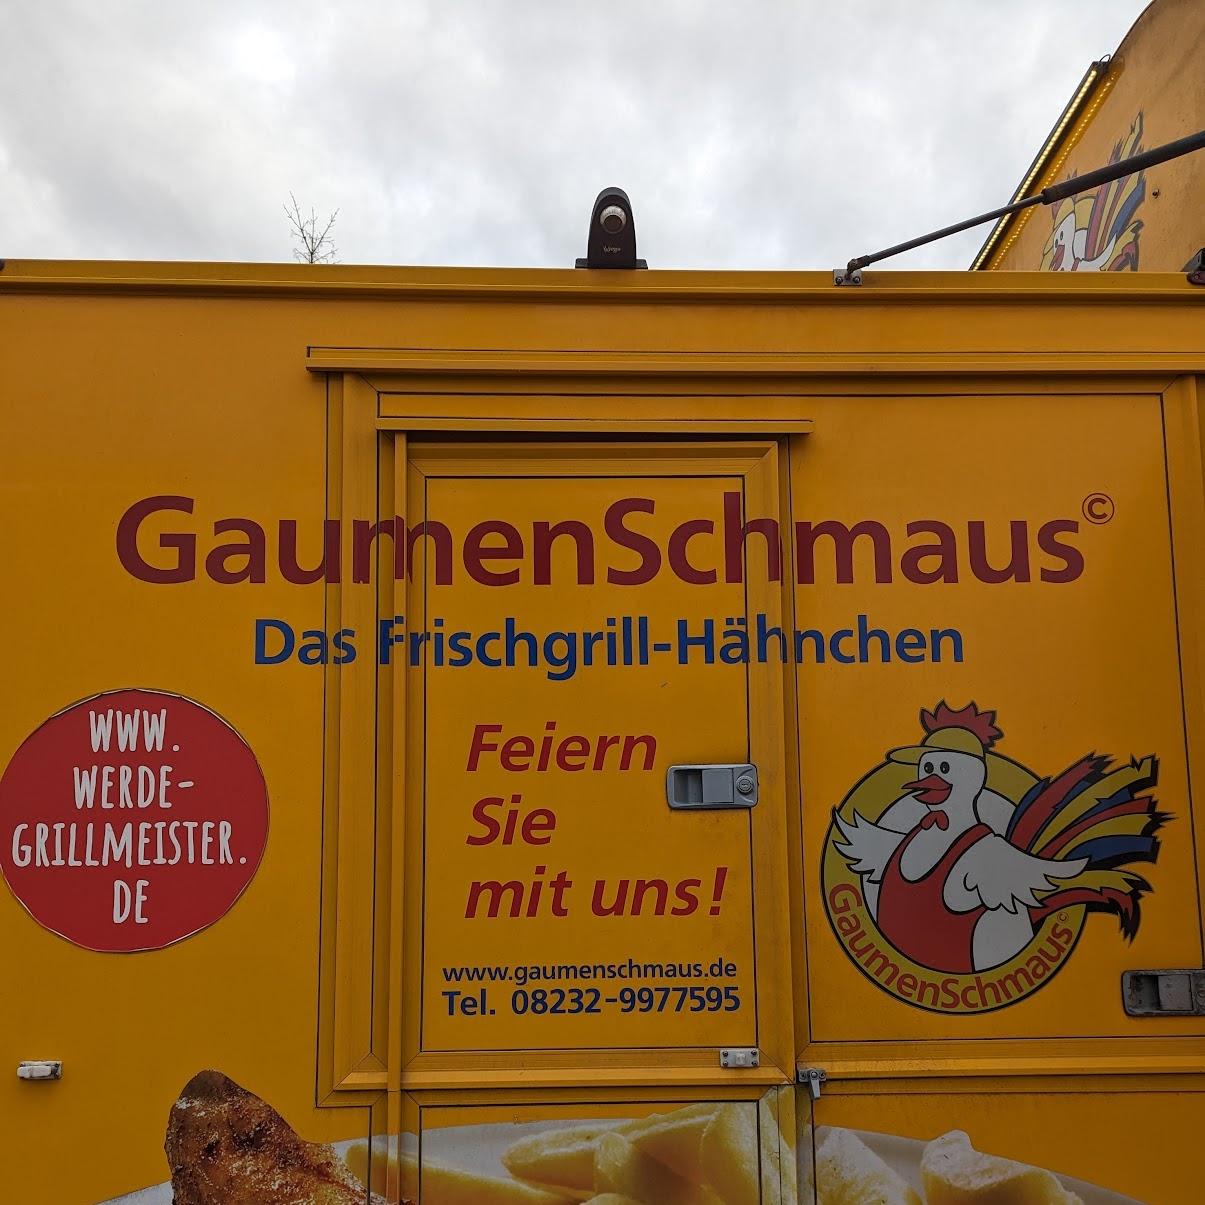 Restaurant "Gaumenschmaus" in Kaufering